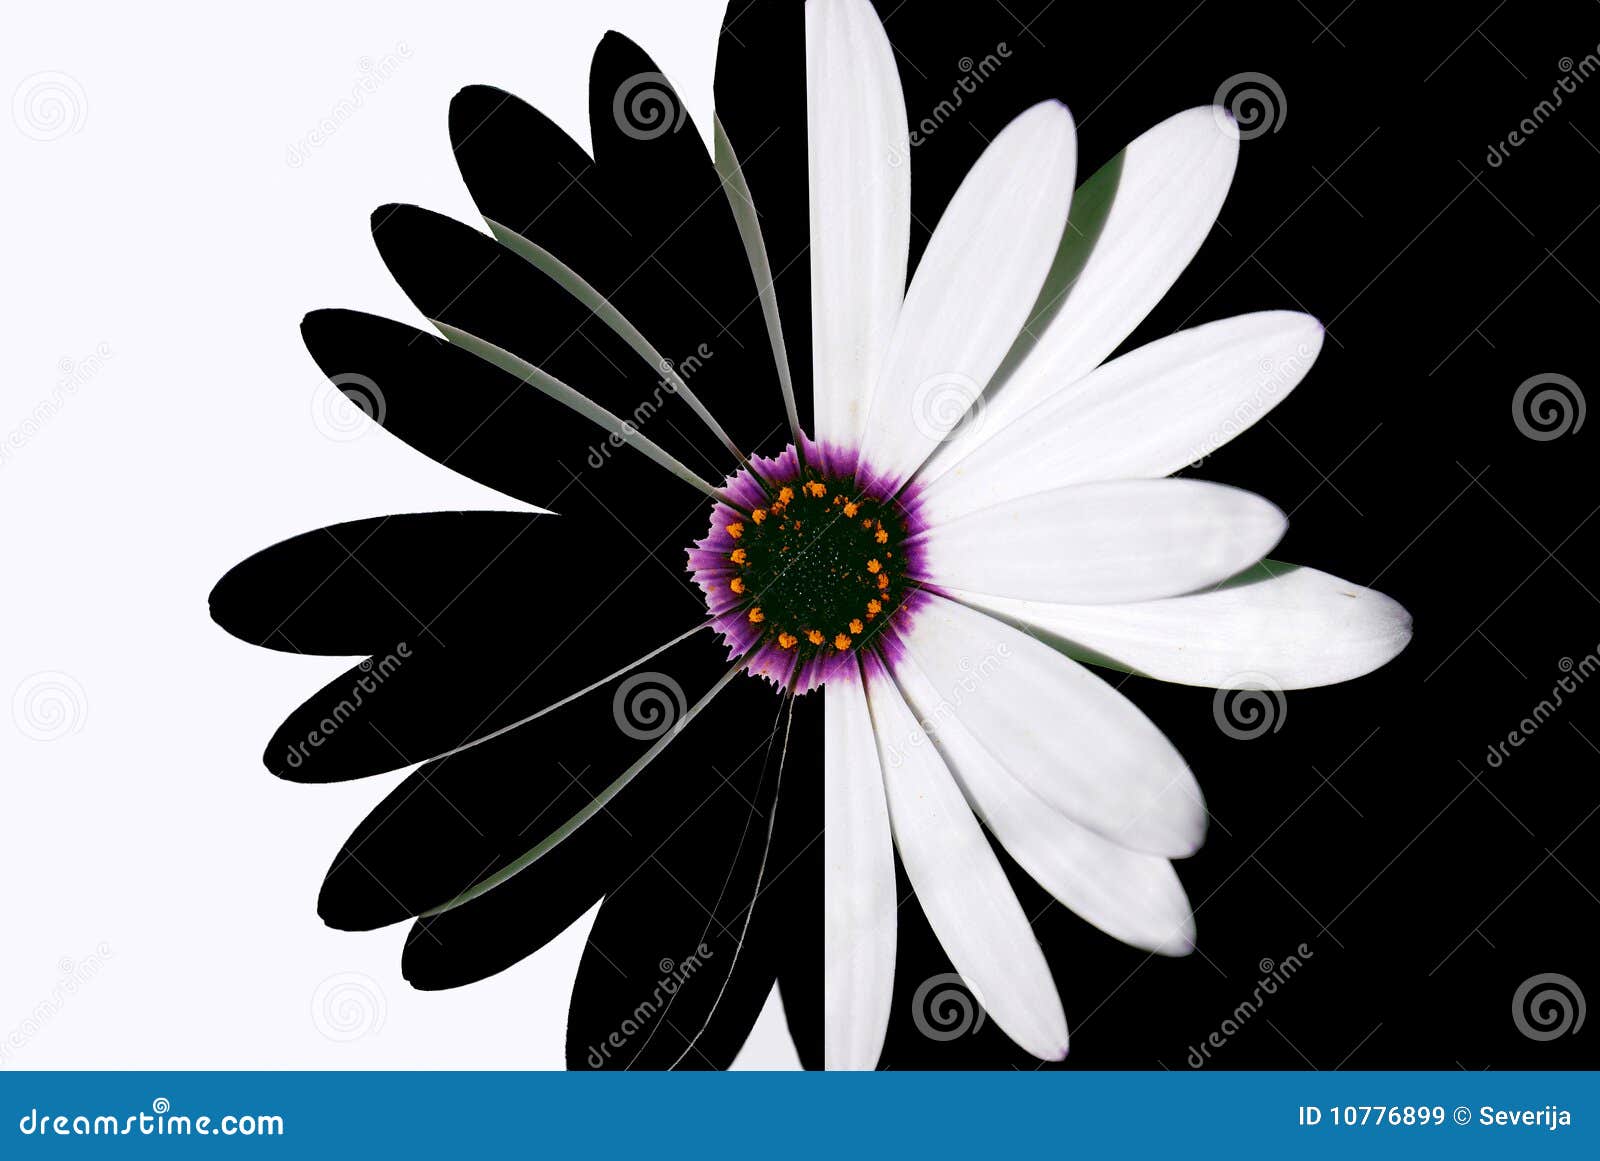 Fiore In Bianco E Nero Immagine Stock Immagine Di Fioritura 10776899